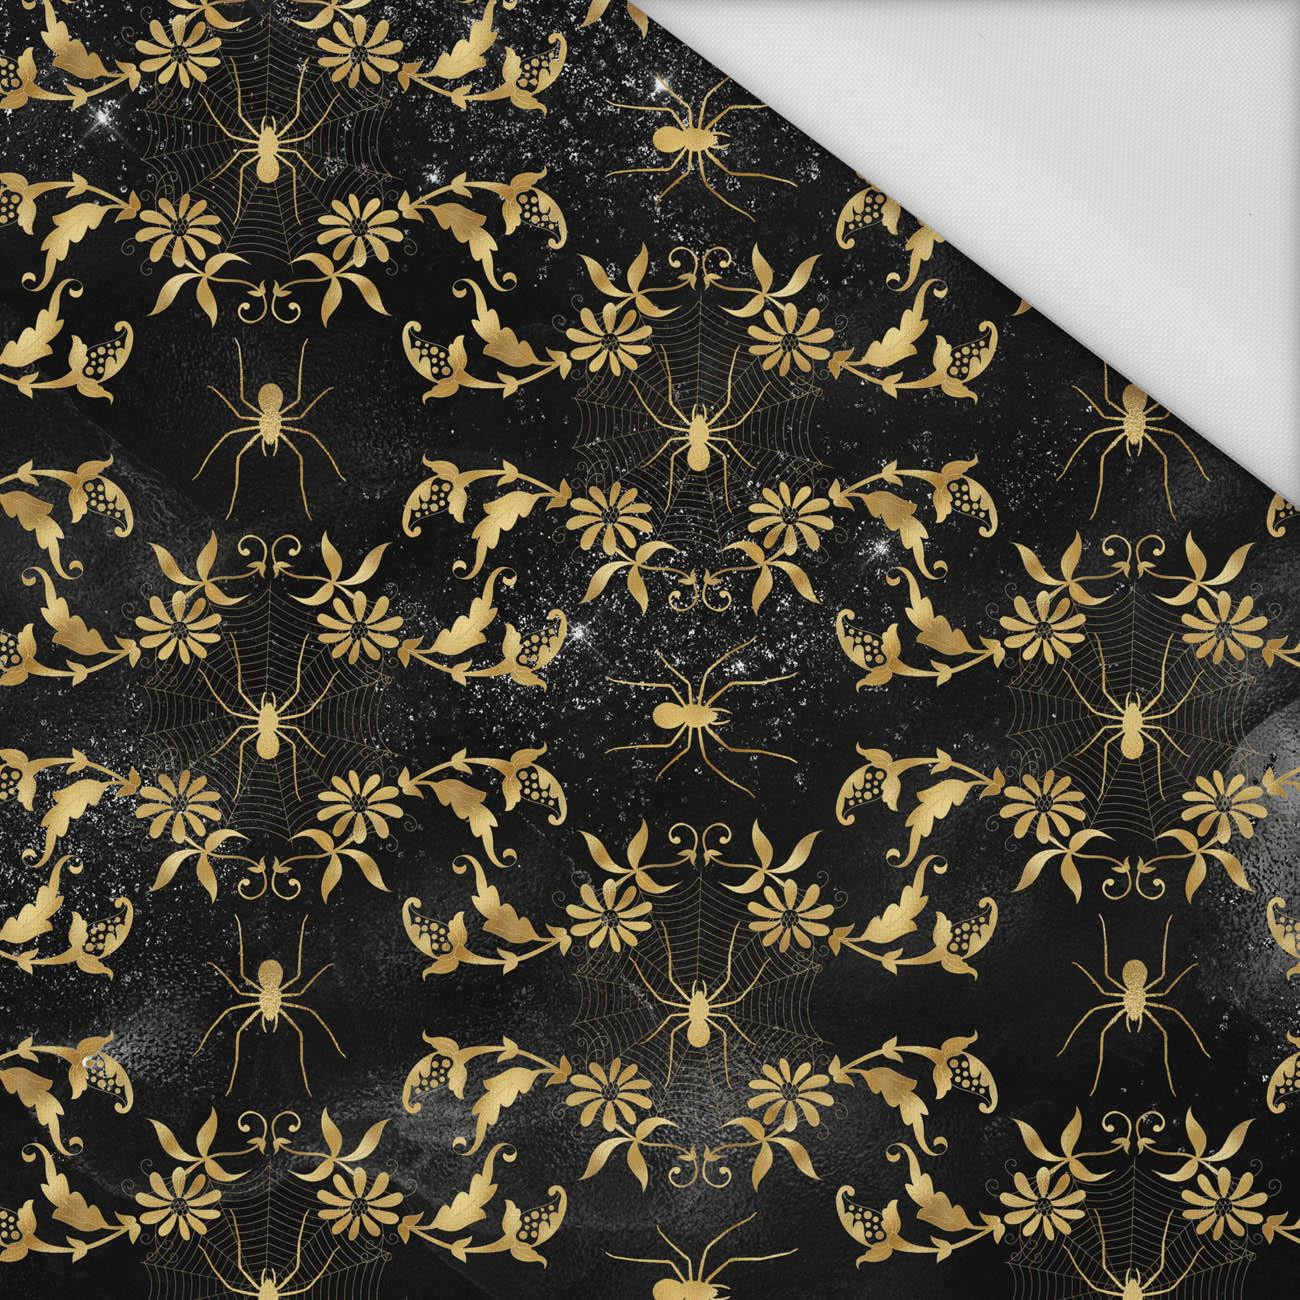 GOLDEN SPIDERS PAT. 1 - Waterproof woven fabric